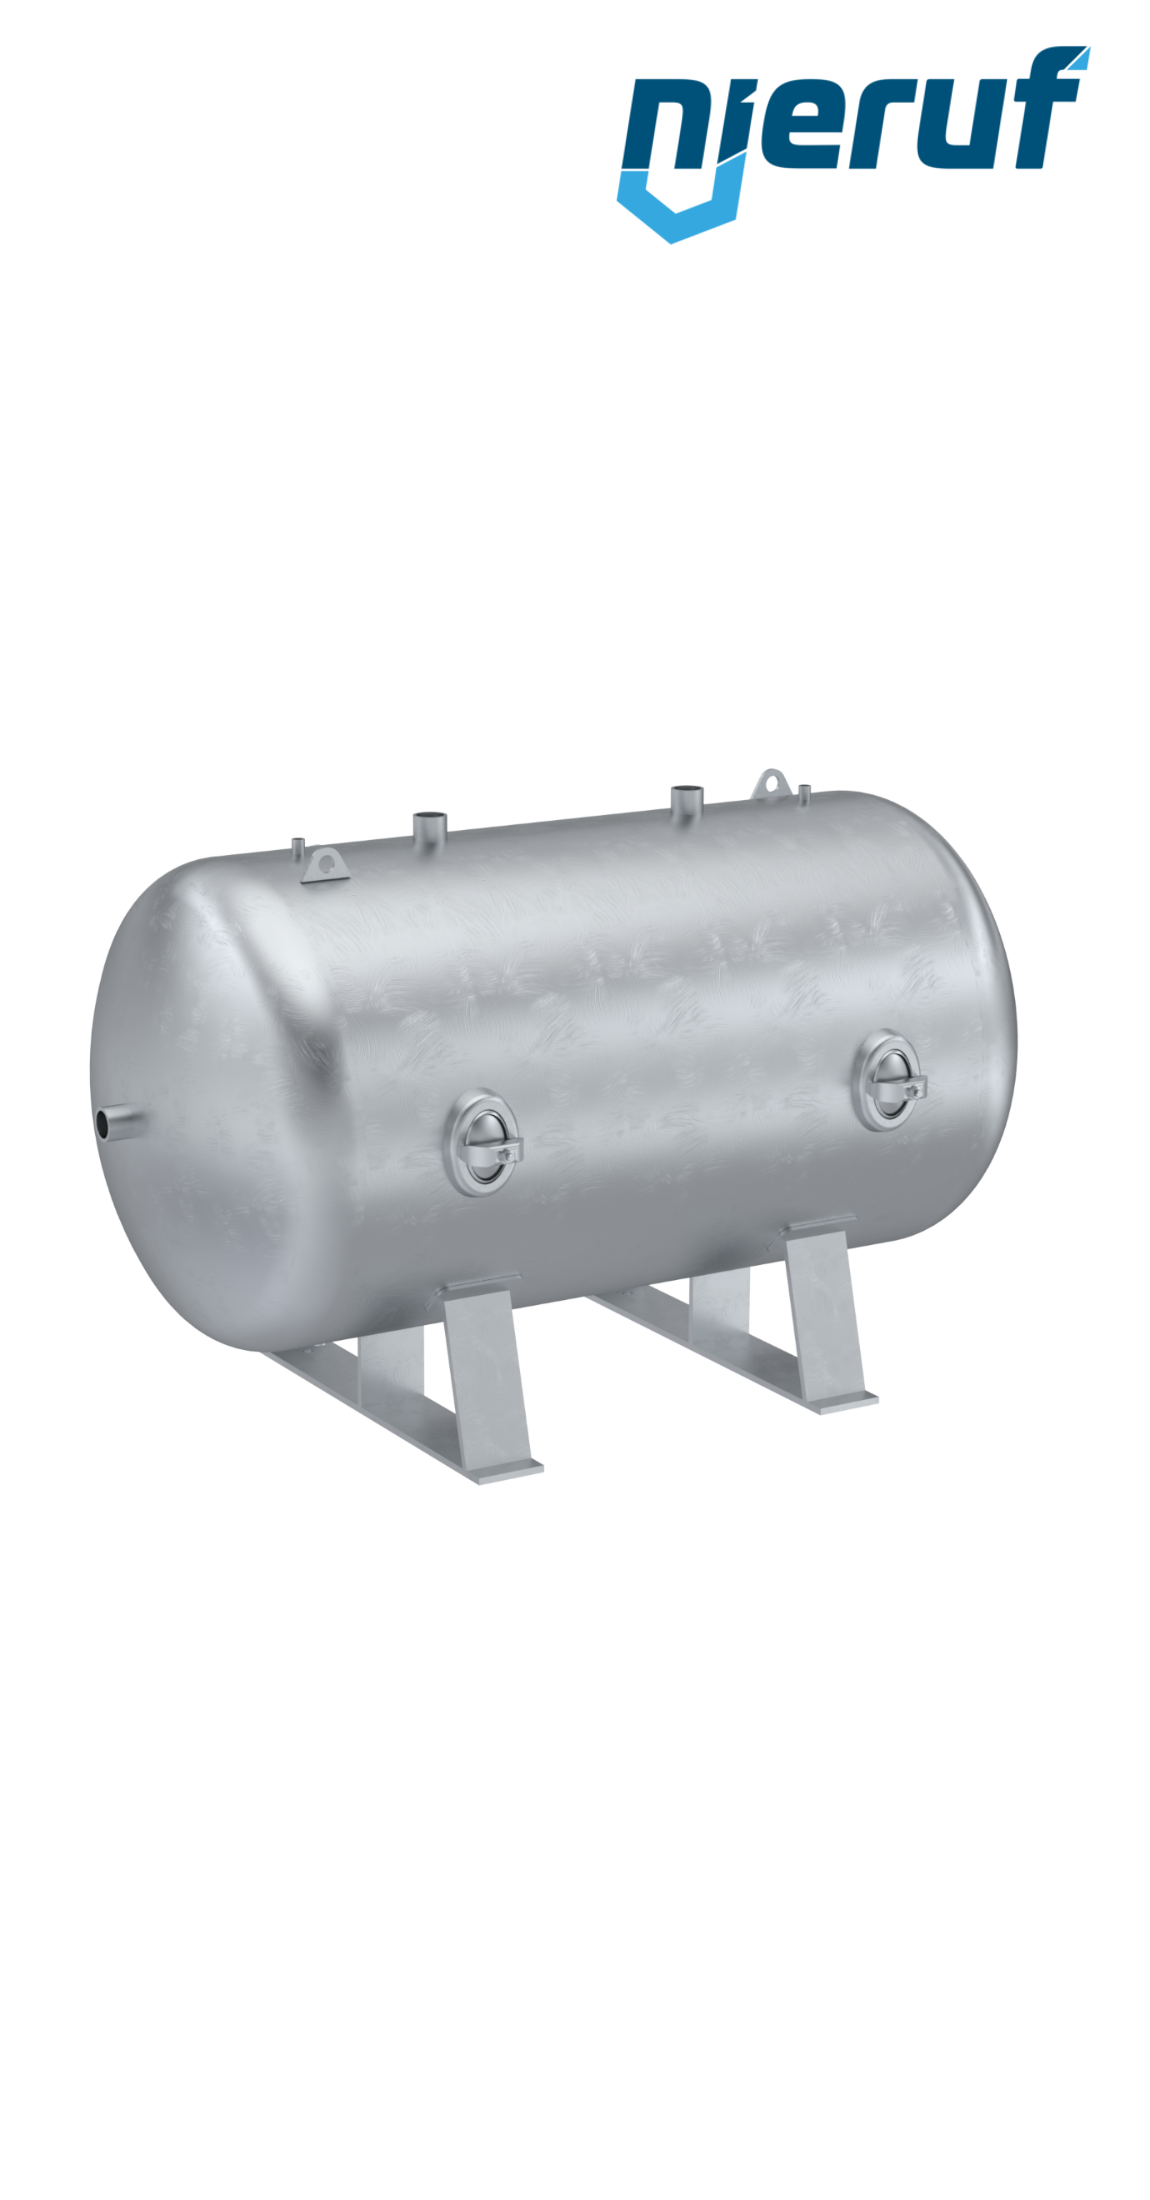 Serbatoi per alta pressione orizzontale BE02 2000 litri, 0-36 bar, acciaio primerizzato